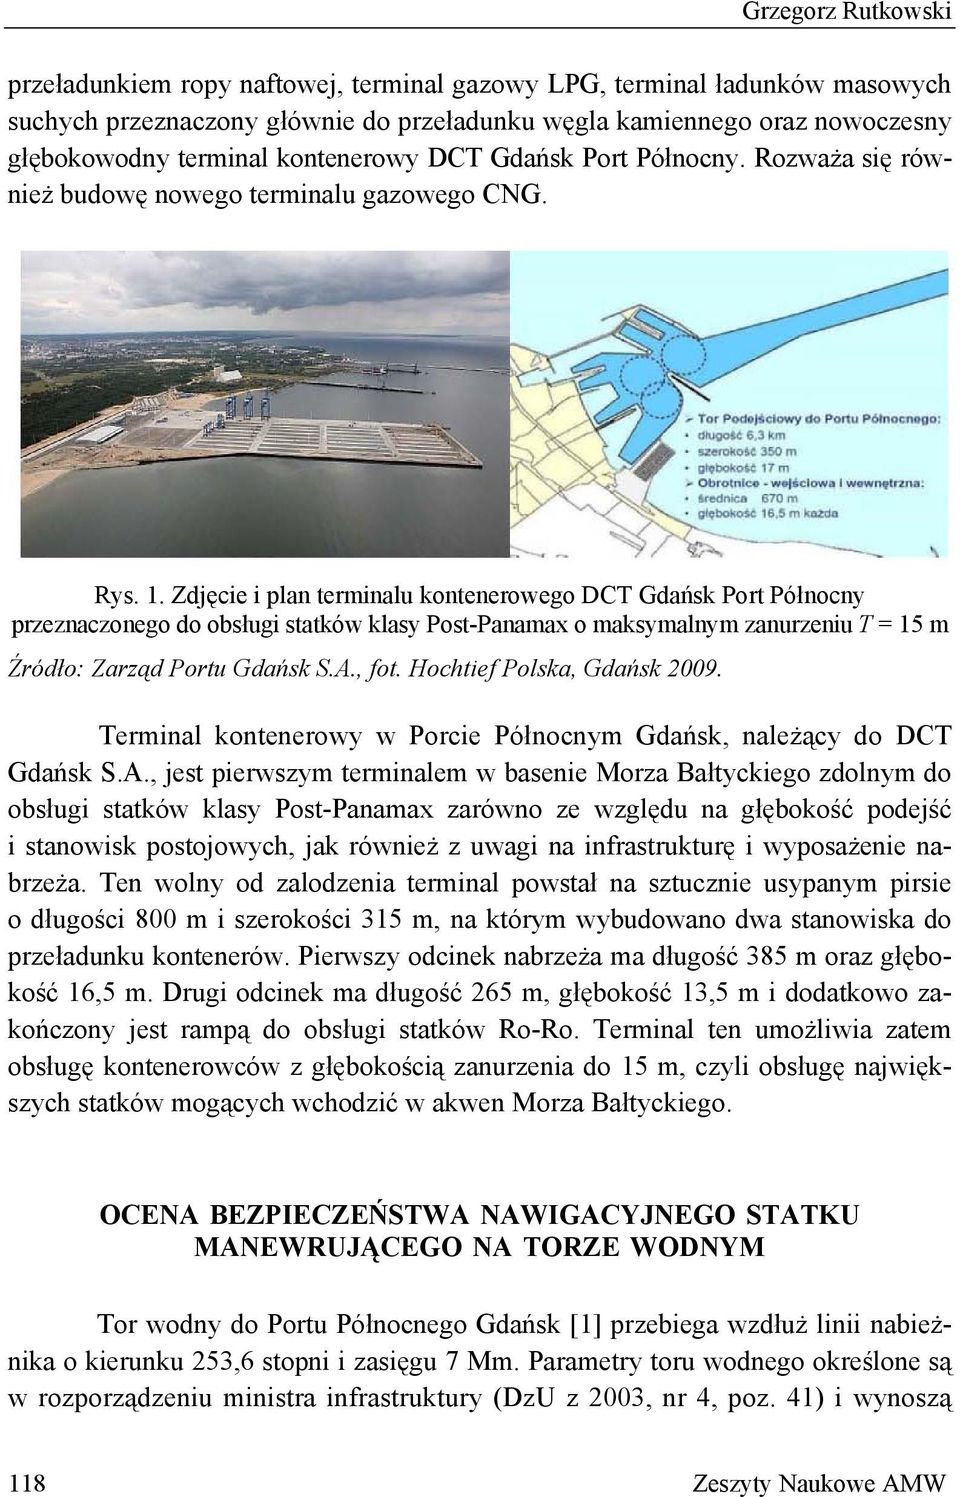 Zdjęcie i plan terminalu kontenerowego DCT Gdańsk Port Północny przeznaczonego do obsługi statków klasy Post-Panamax o maksymalnym zanurzeniu T = 15 m Źródło: Zarząd Portu Gdańsk S.A., fot.